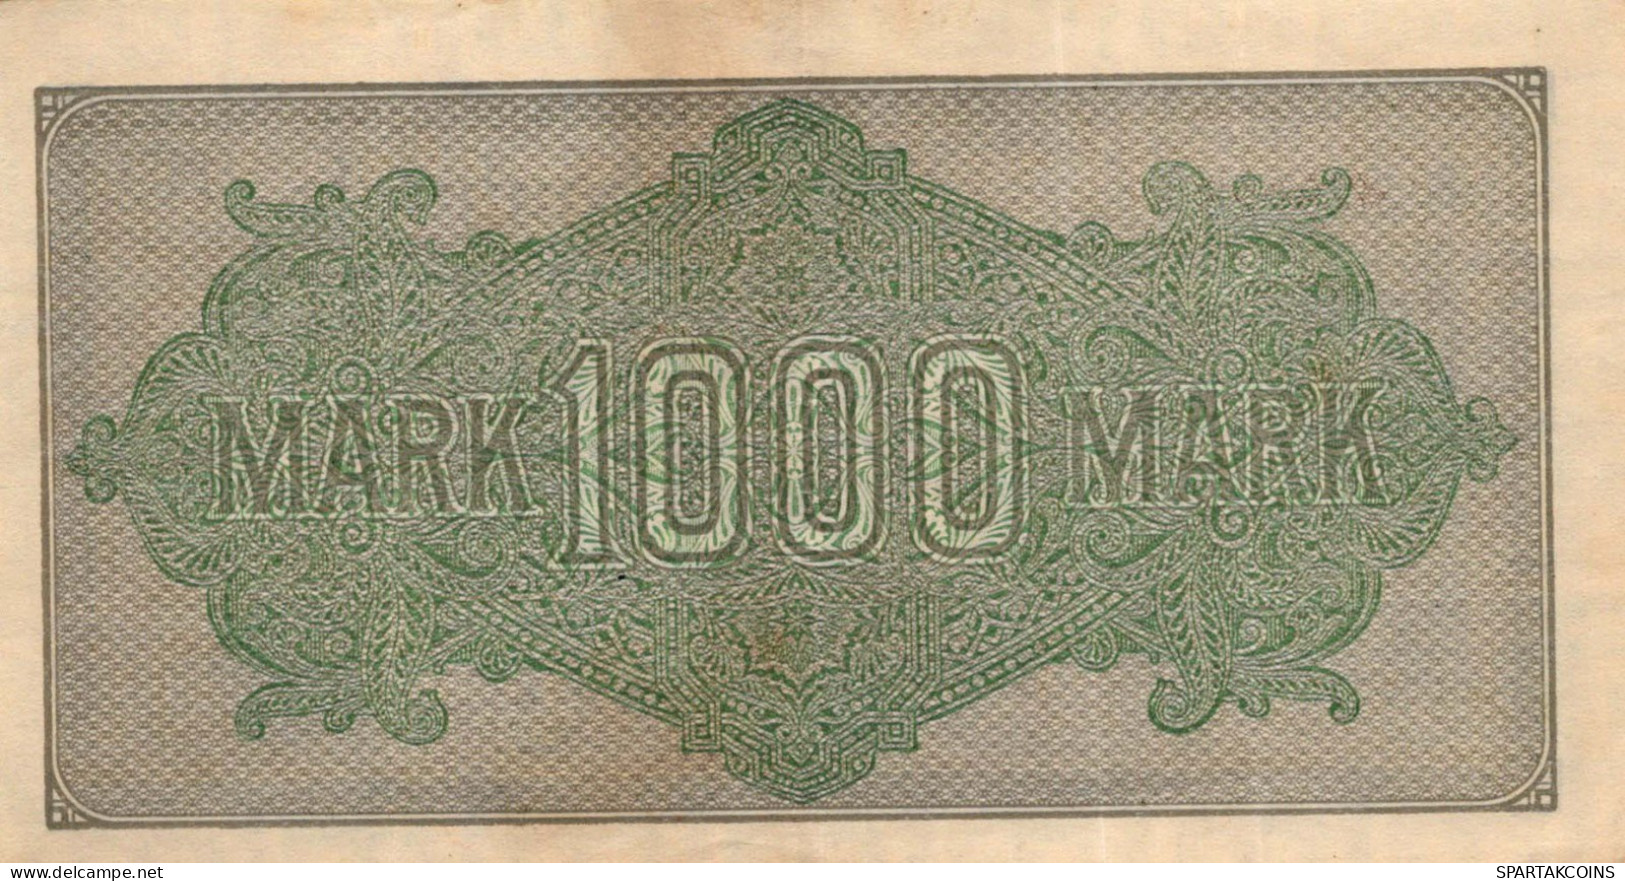 1000 MARK 1922 Stadt BERLIN DEUTSCHLAND Papiergeld Banknote #PL383 - [11] Local Banknote Issues